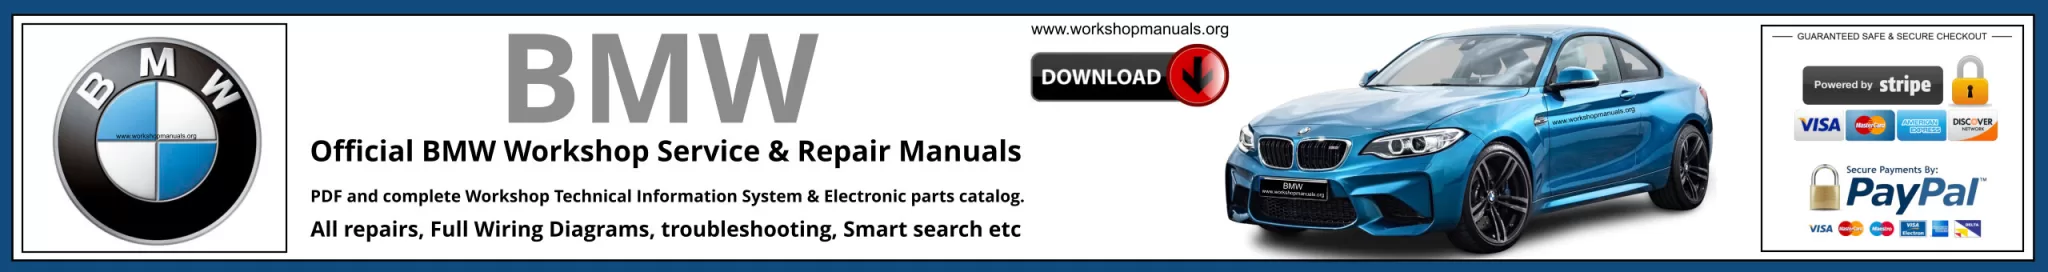 BMW Workshop Repair Manual Banner